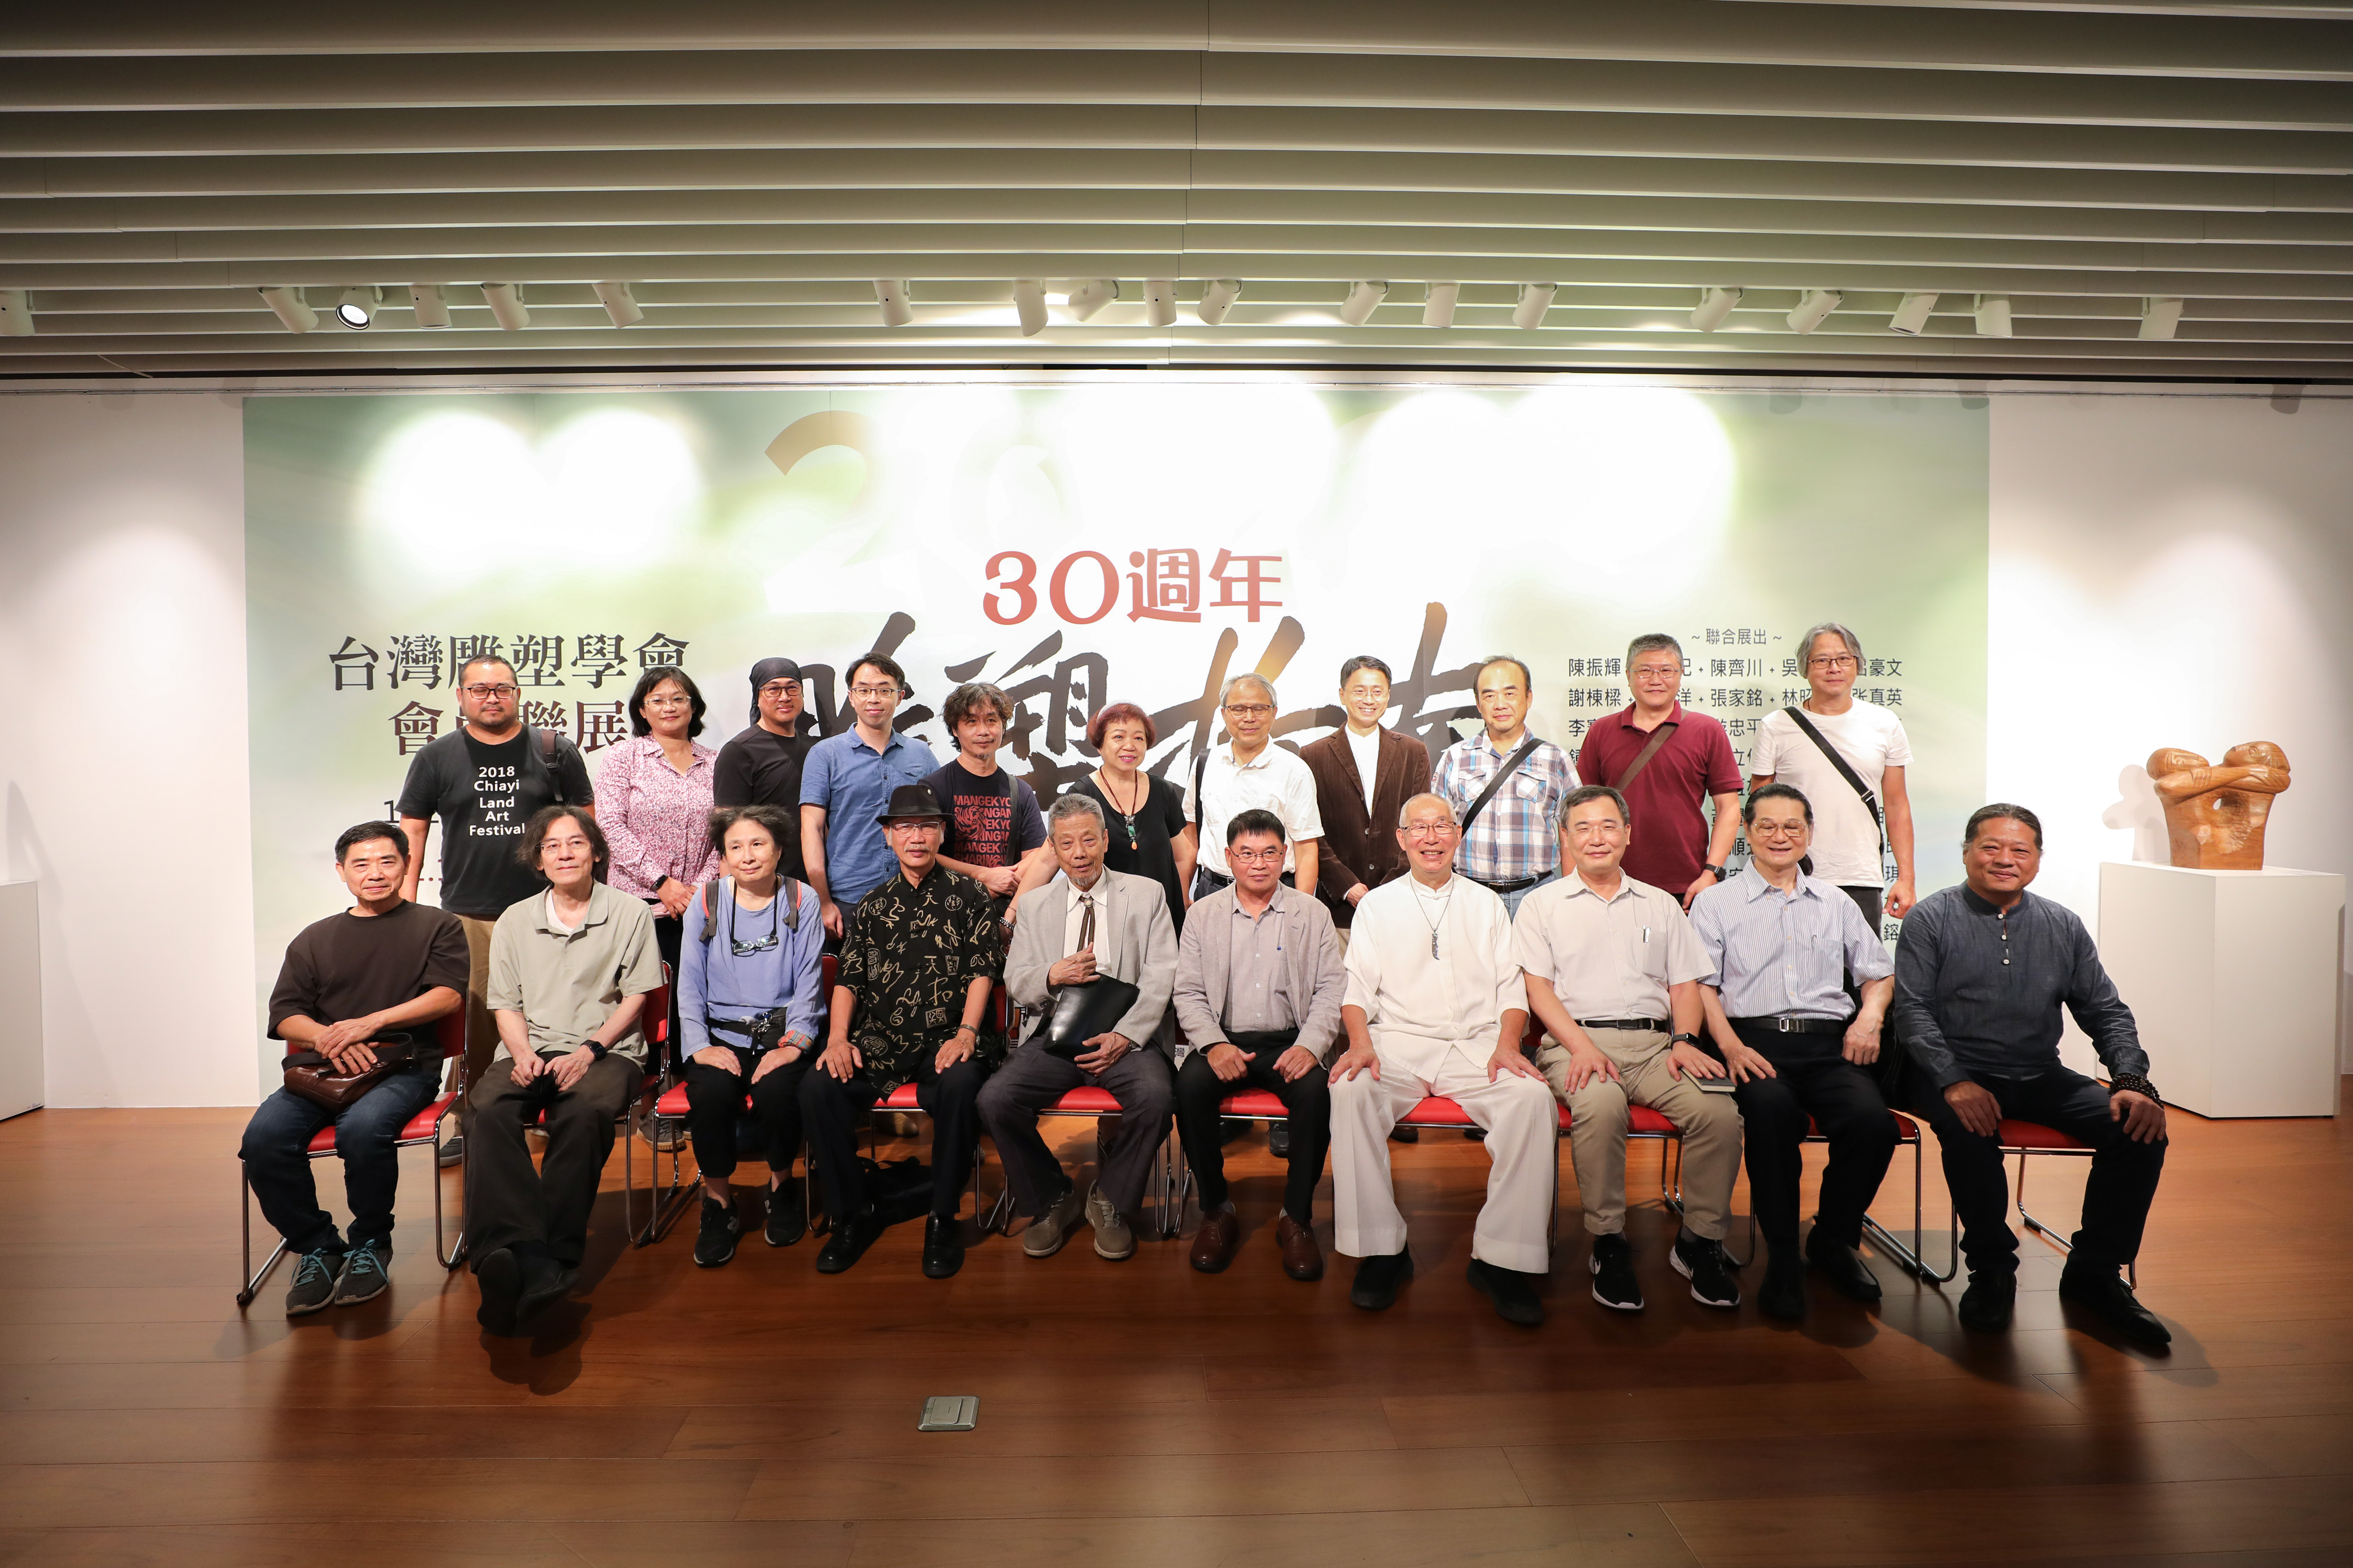 雕塑指南—台灣雕塑學會30週年慶會員聯展於本館博愛藝廊展出，10月02日舉行開幕式。 112.10.02